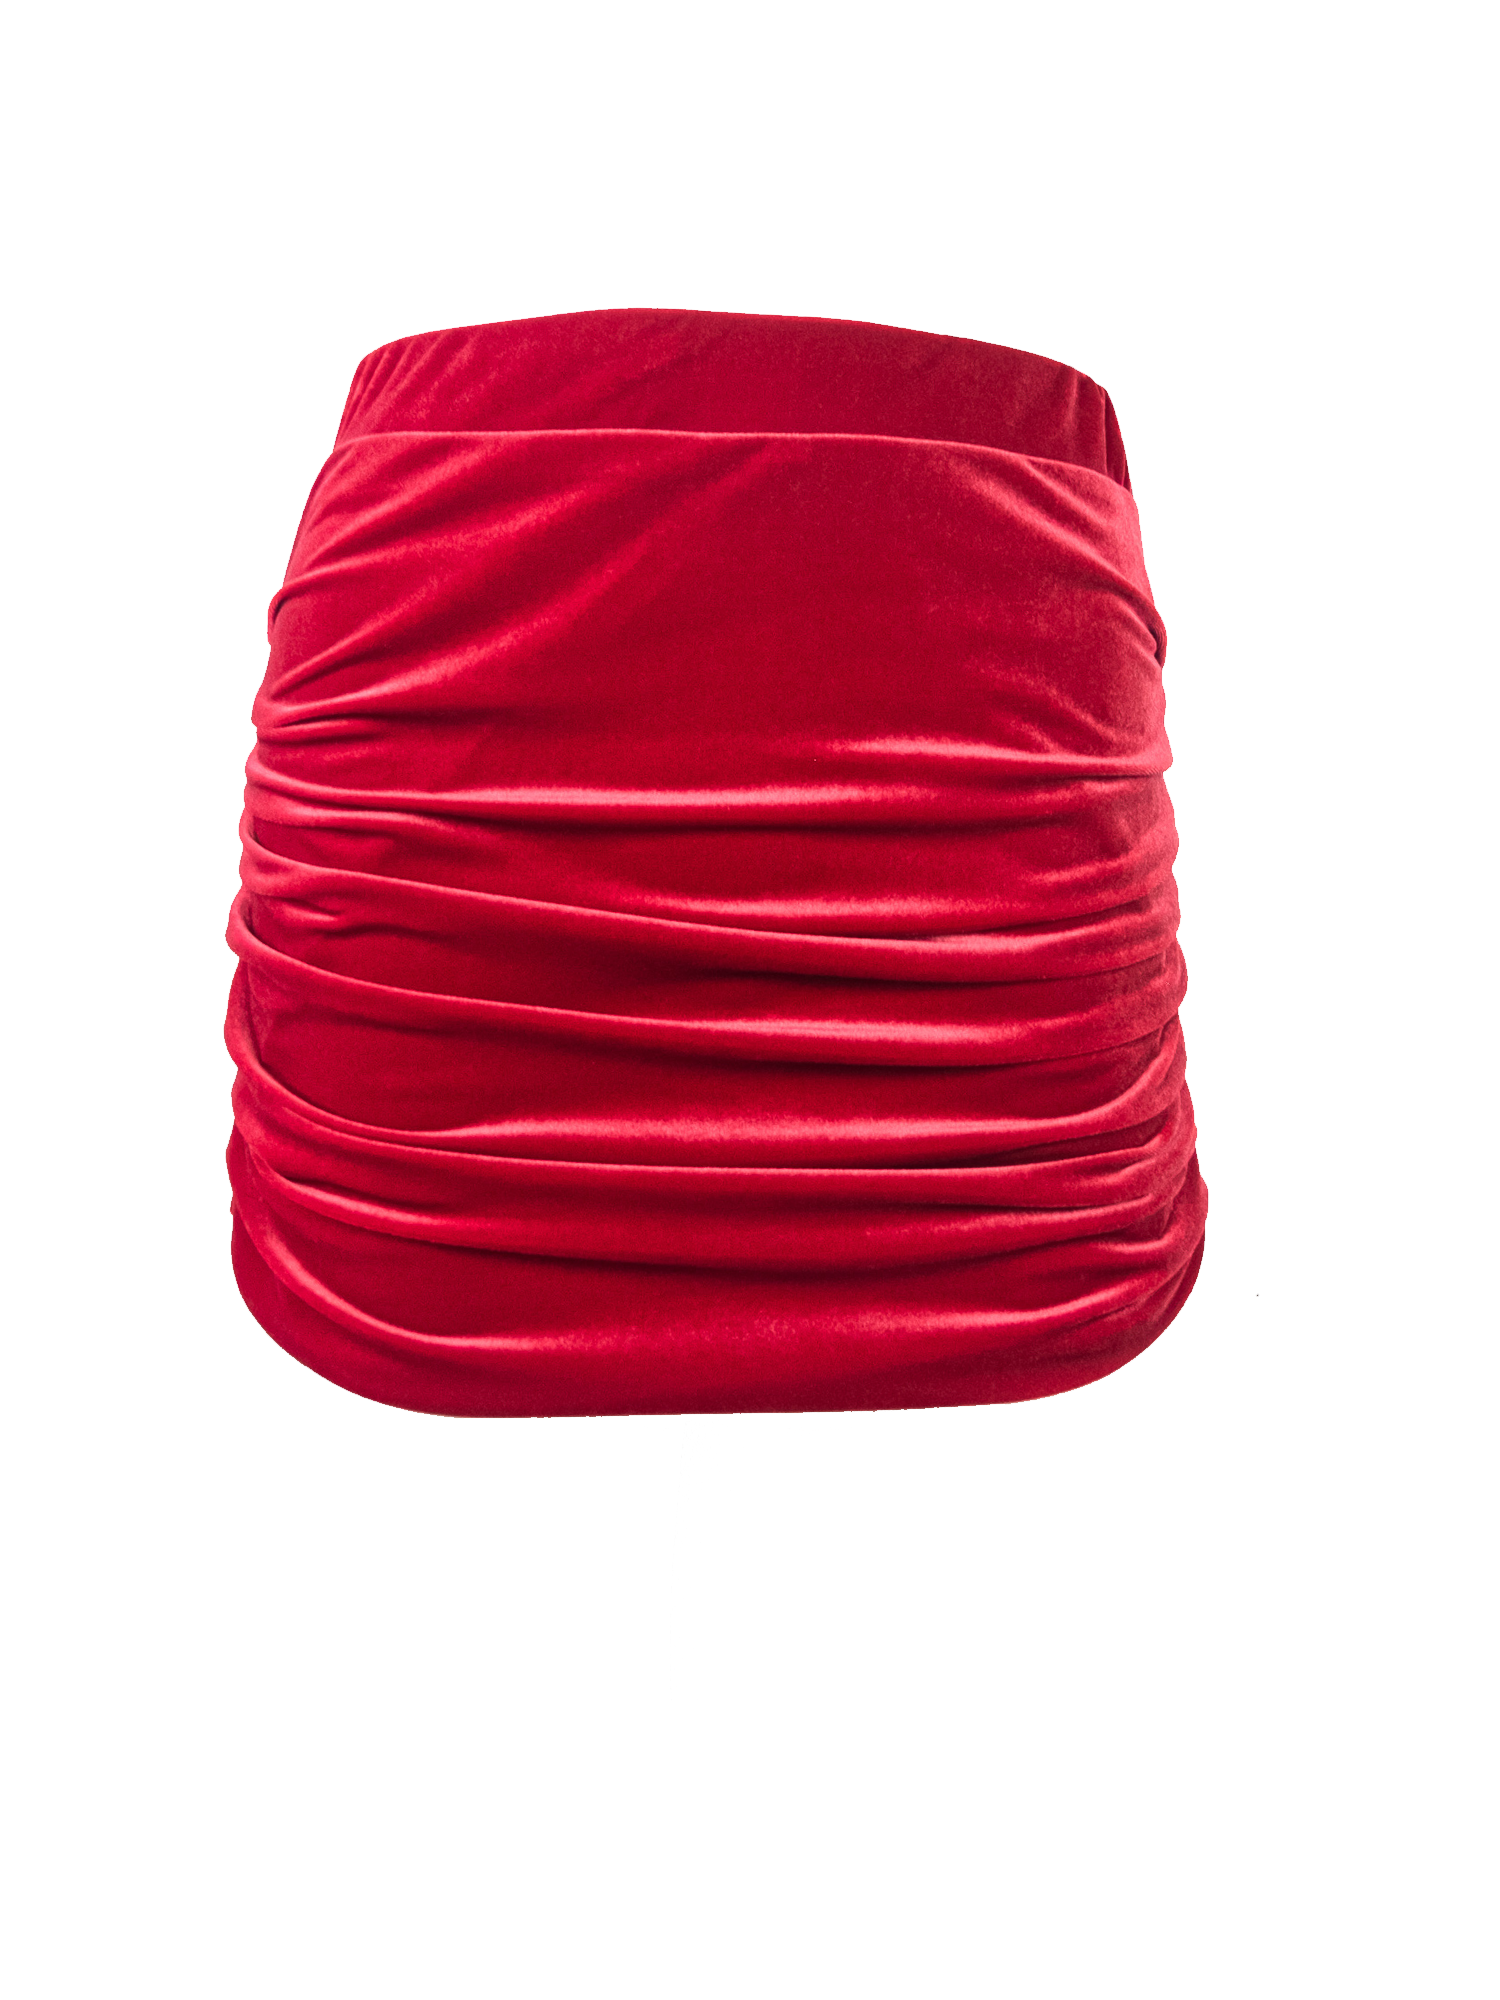 NINA - drap skirt in red chenille